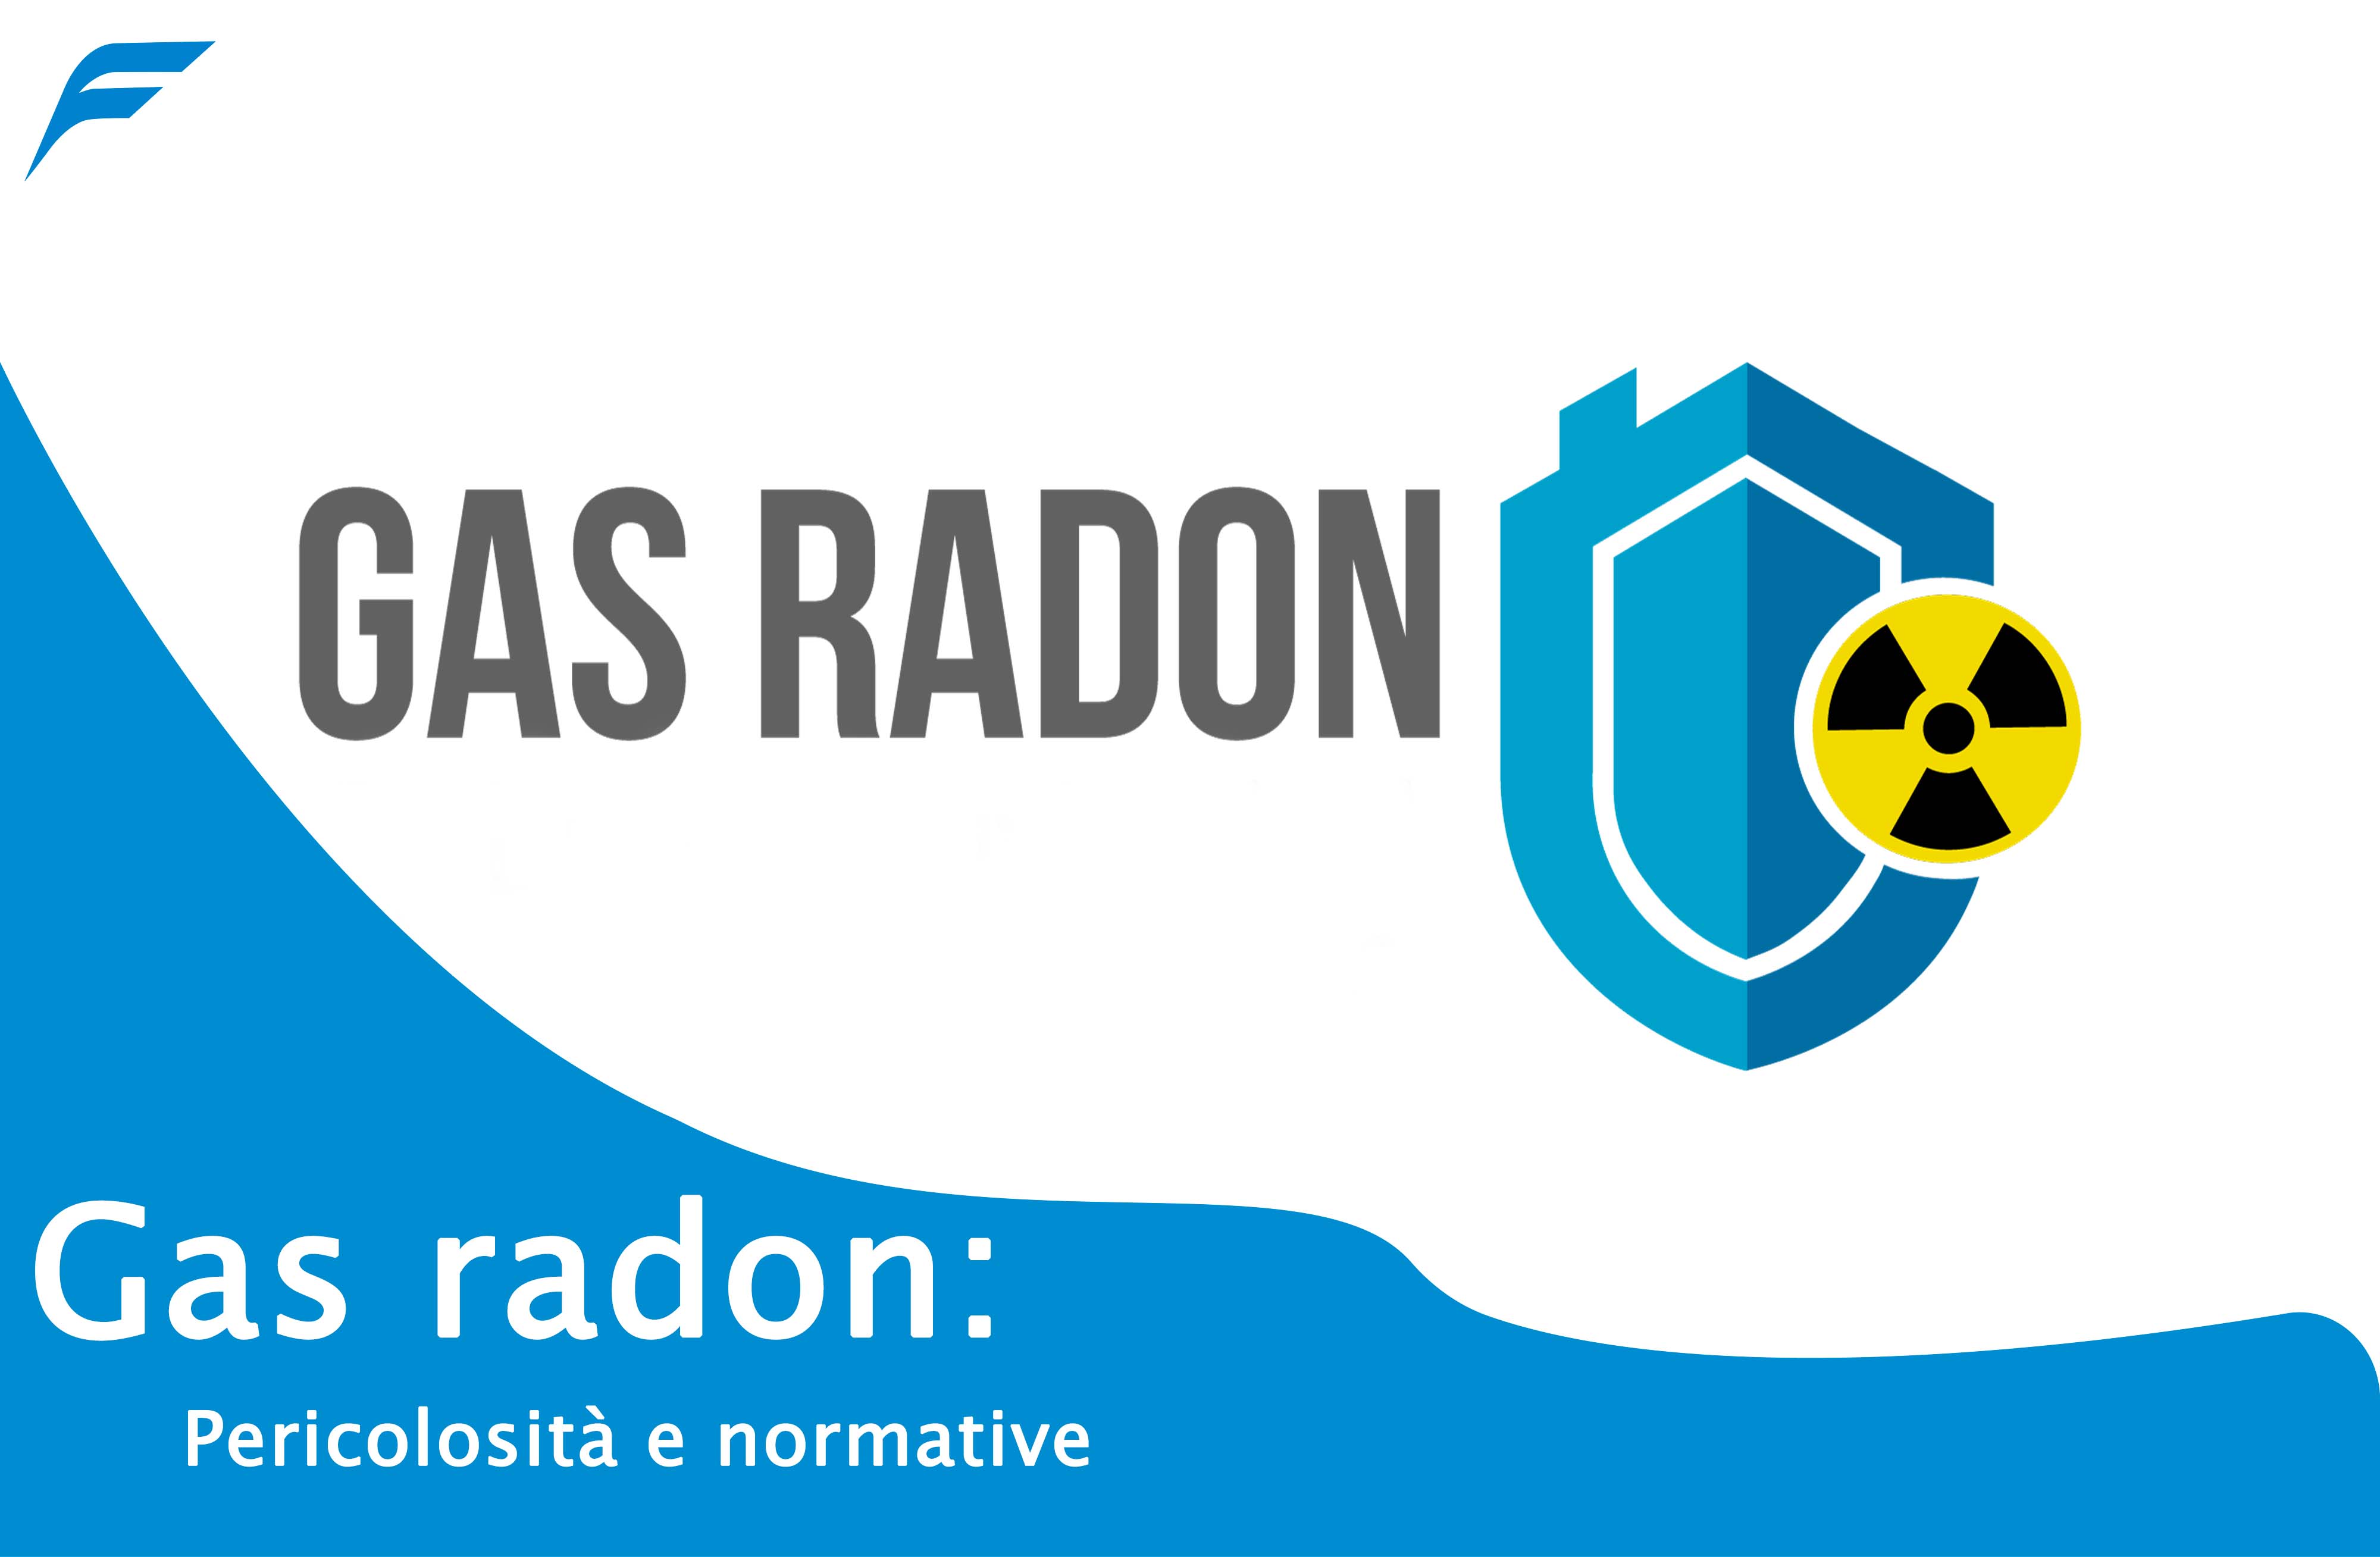 Gas radon, pericolosità e normative